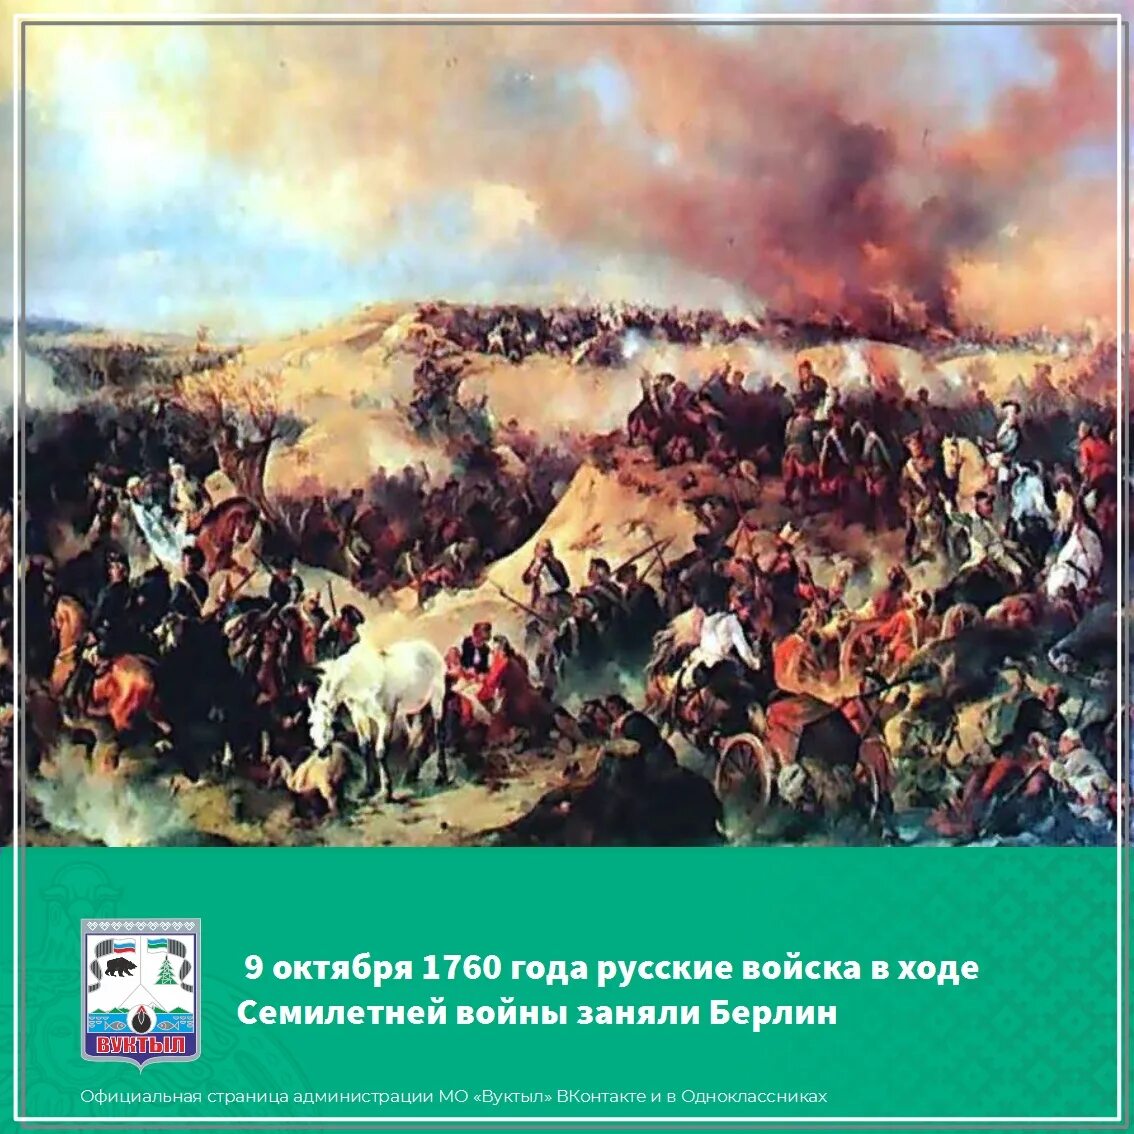 1 Августа 1759 сражение при Кунерсдорфе. Кунерсдорфское сражение 1759. 12 Августа 1759 сражение при Кунерсдорфе. Сражение при Кунерсдорфе картина.